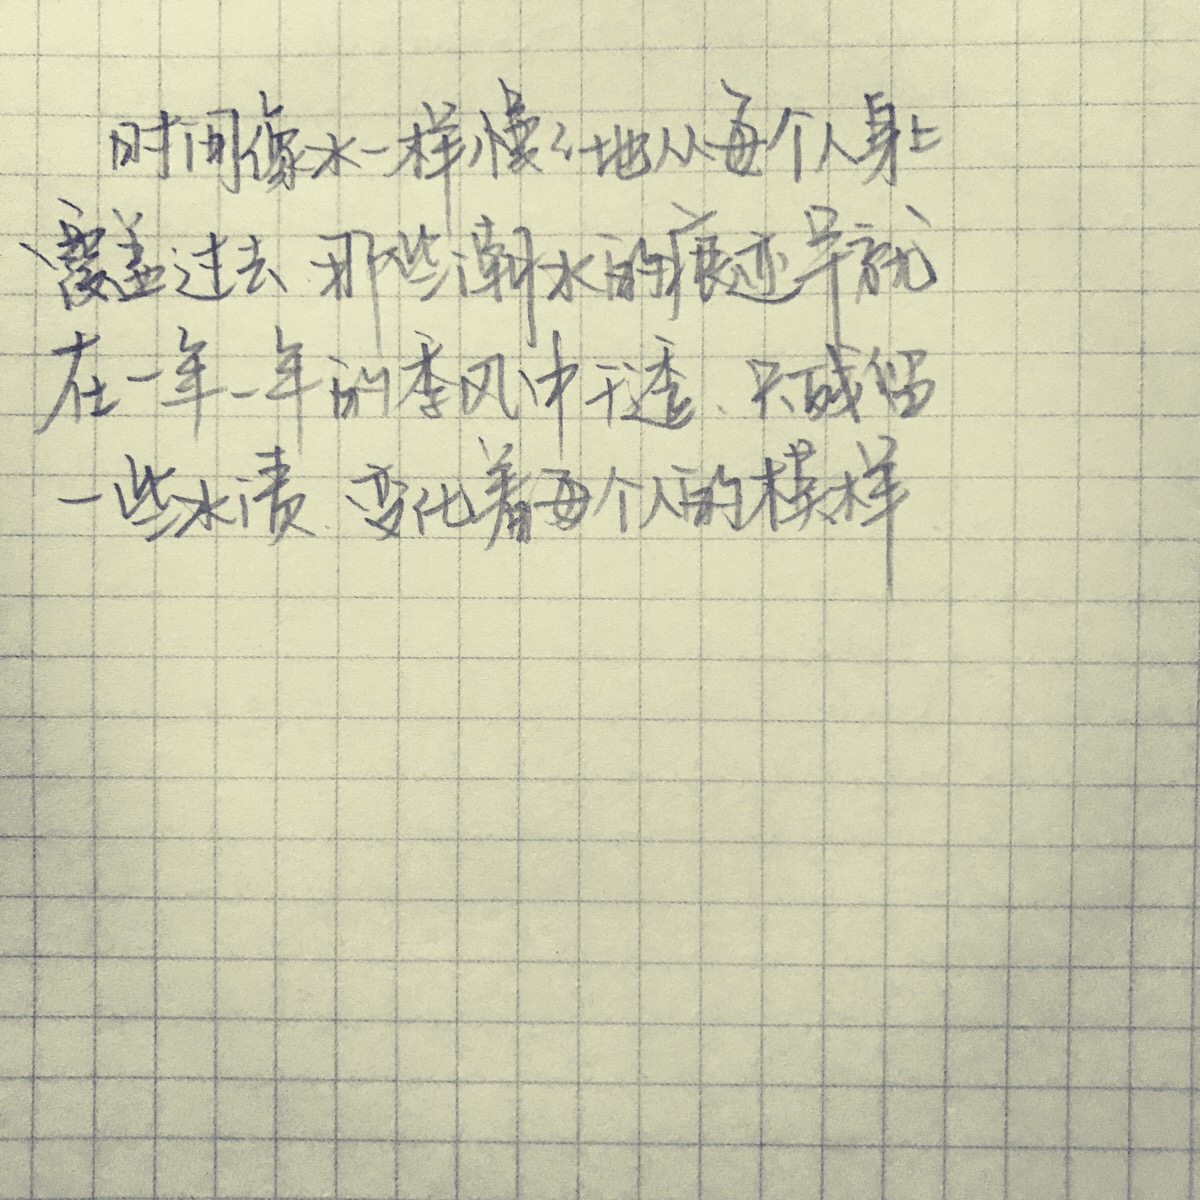 【铅笔手写】夏至未至经典语录～(wuli白白)